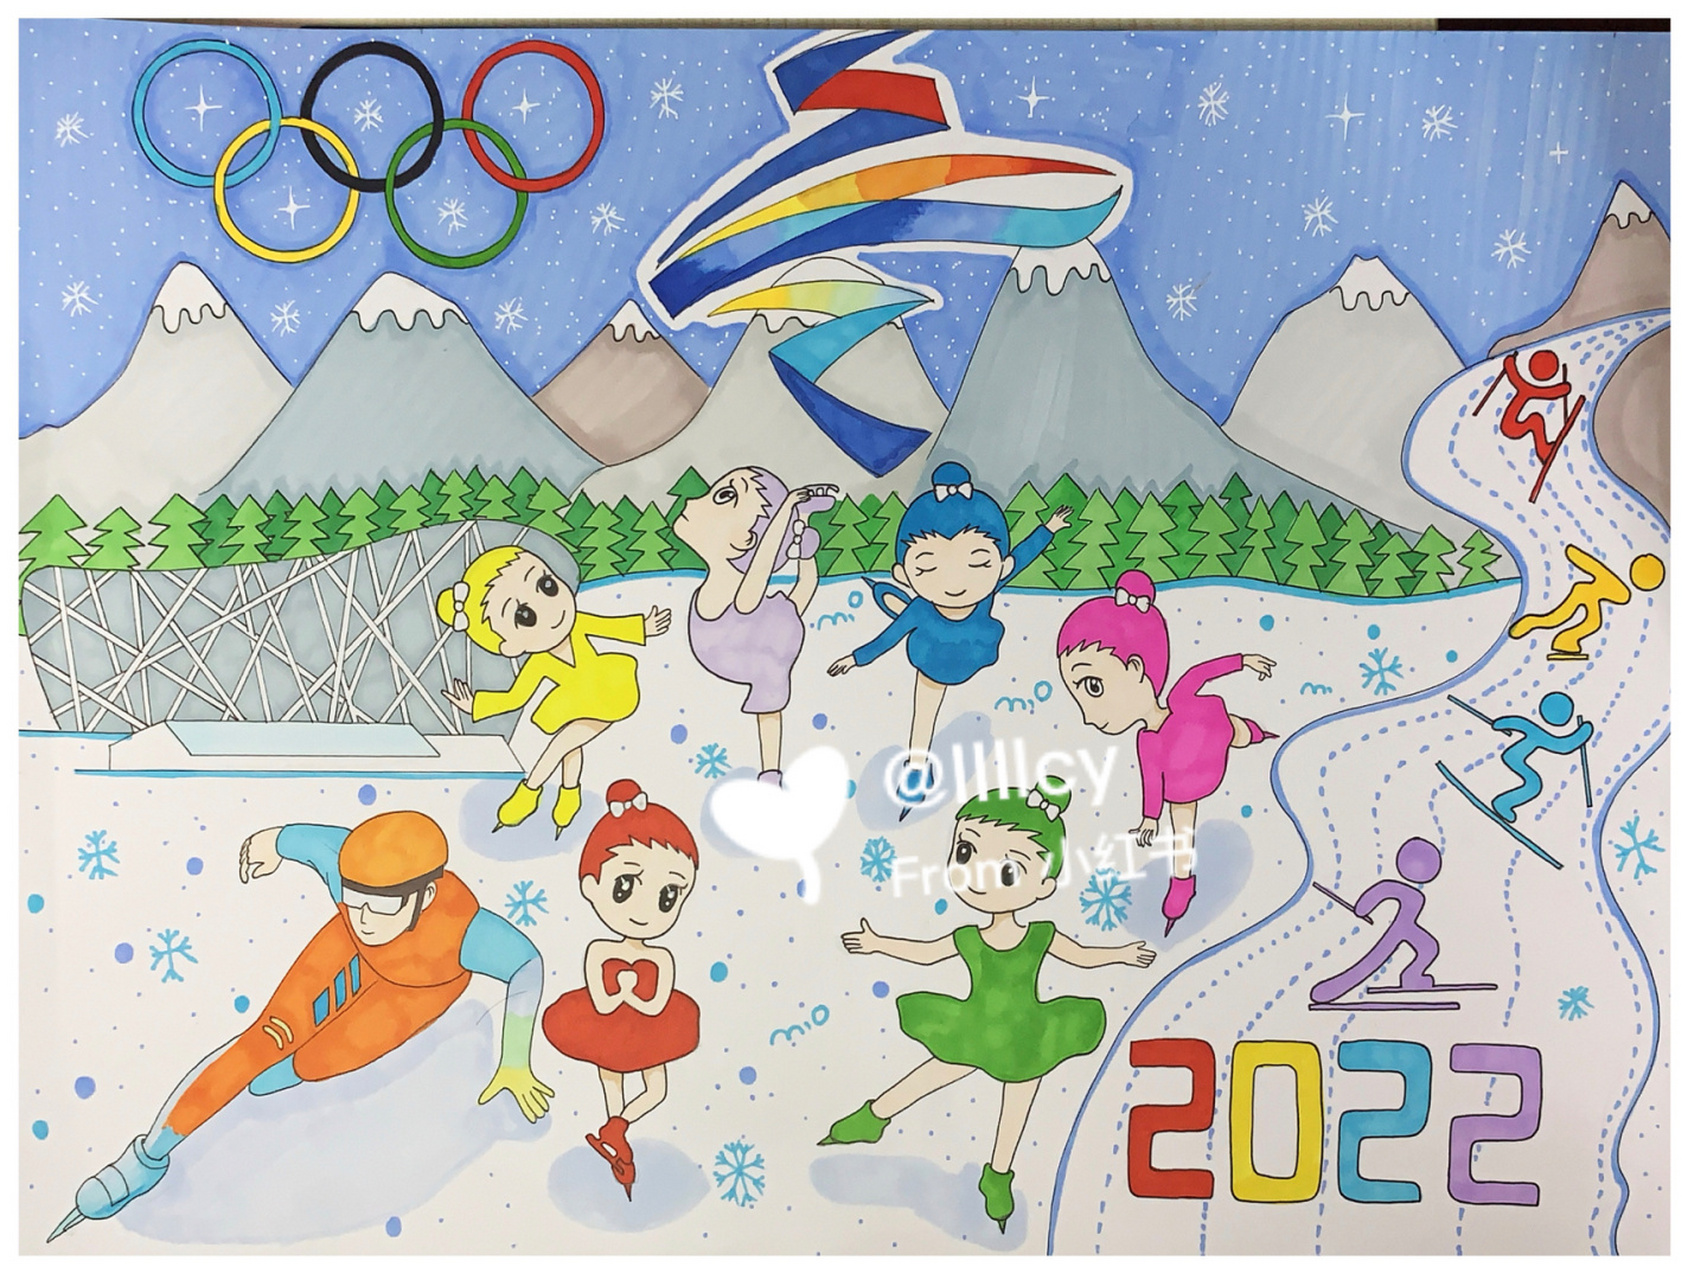 2022鸟巢杯绘画比赛 原创 带学生画的鸟巢杯冬奥运比赛作品 年龄7